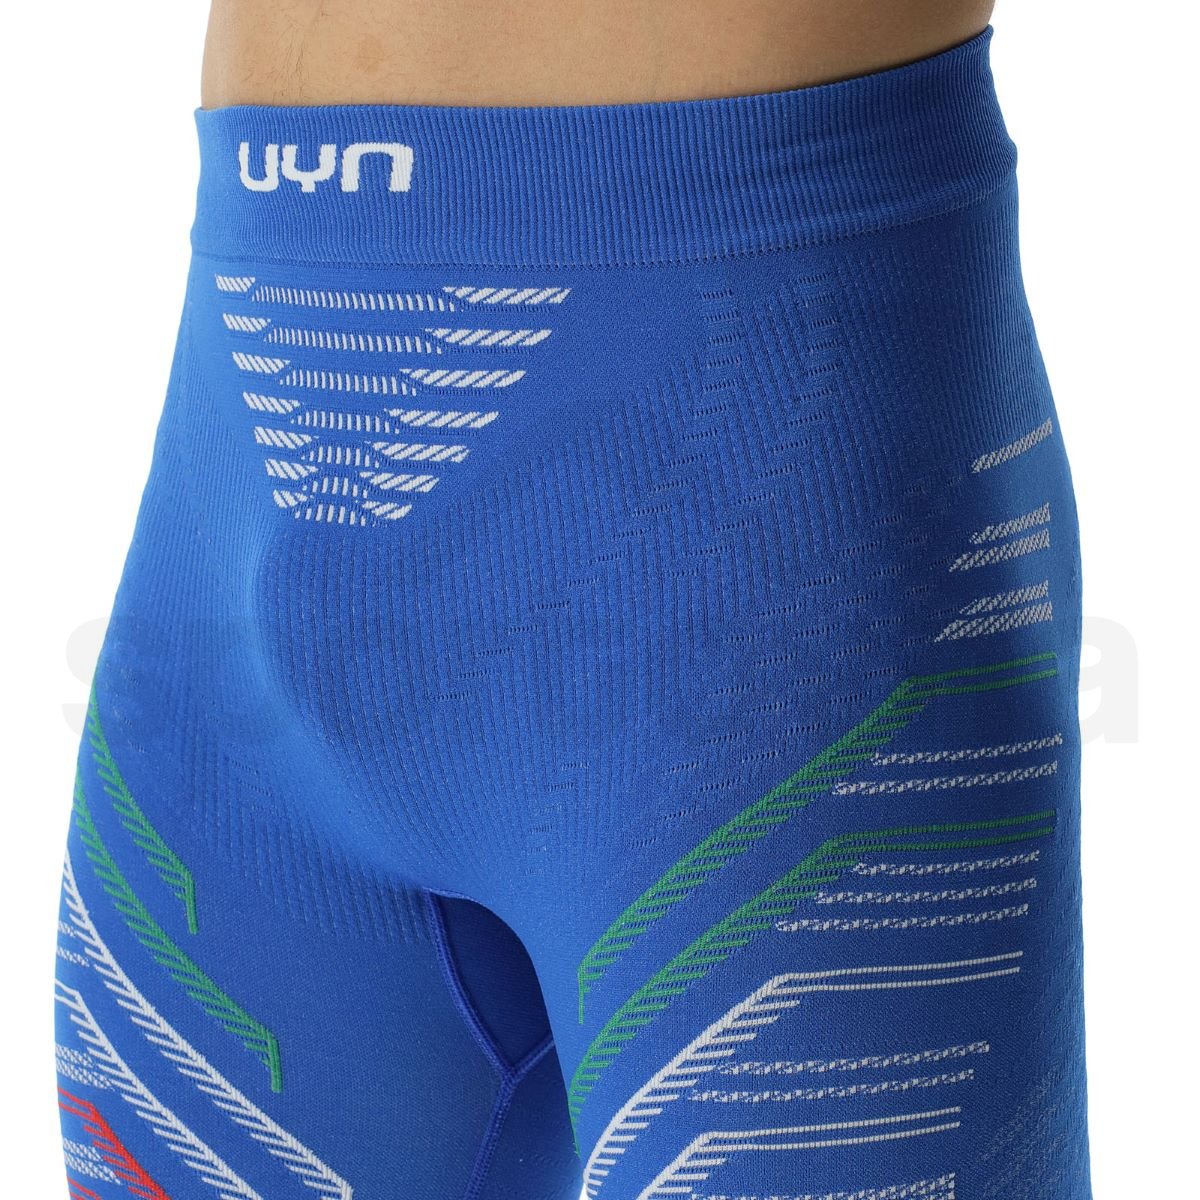 Spodky UYN Natyon 3.0 Pants Medium - Itálie